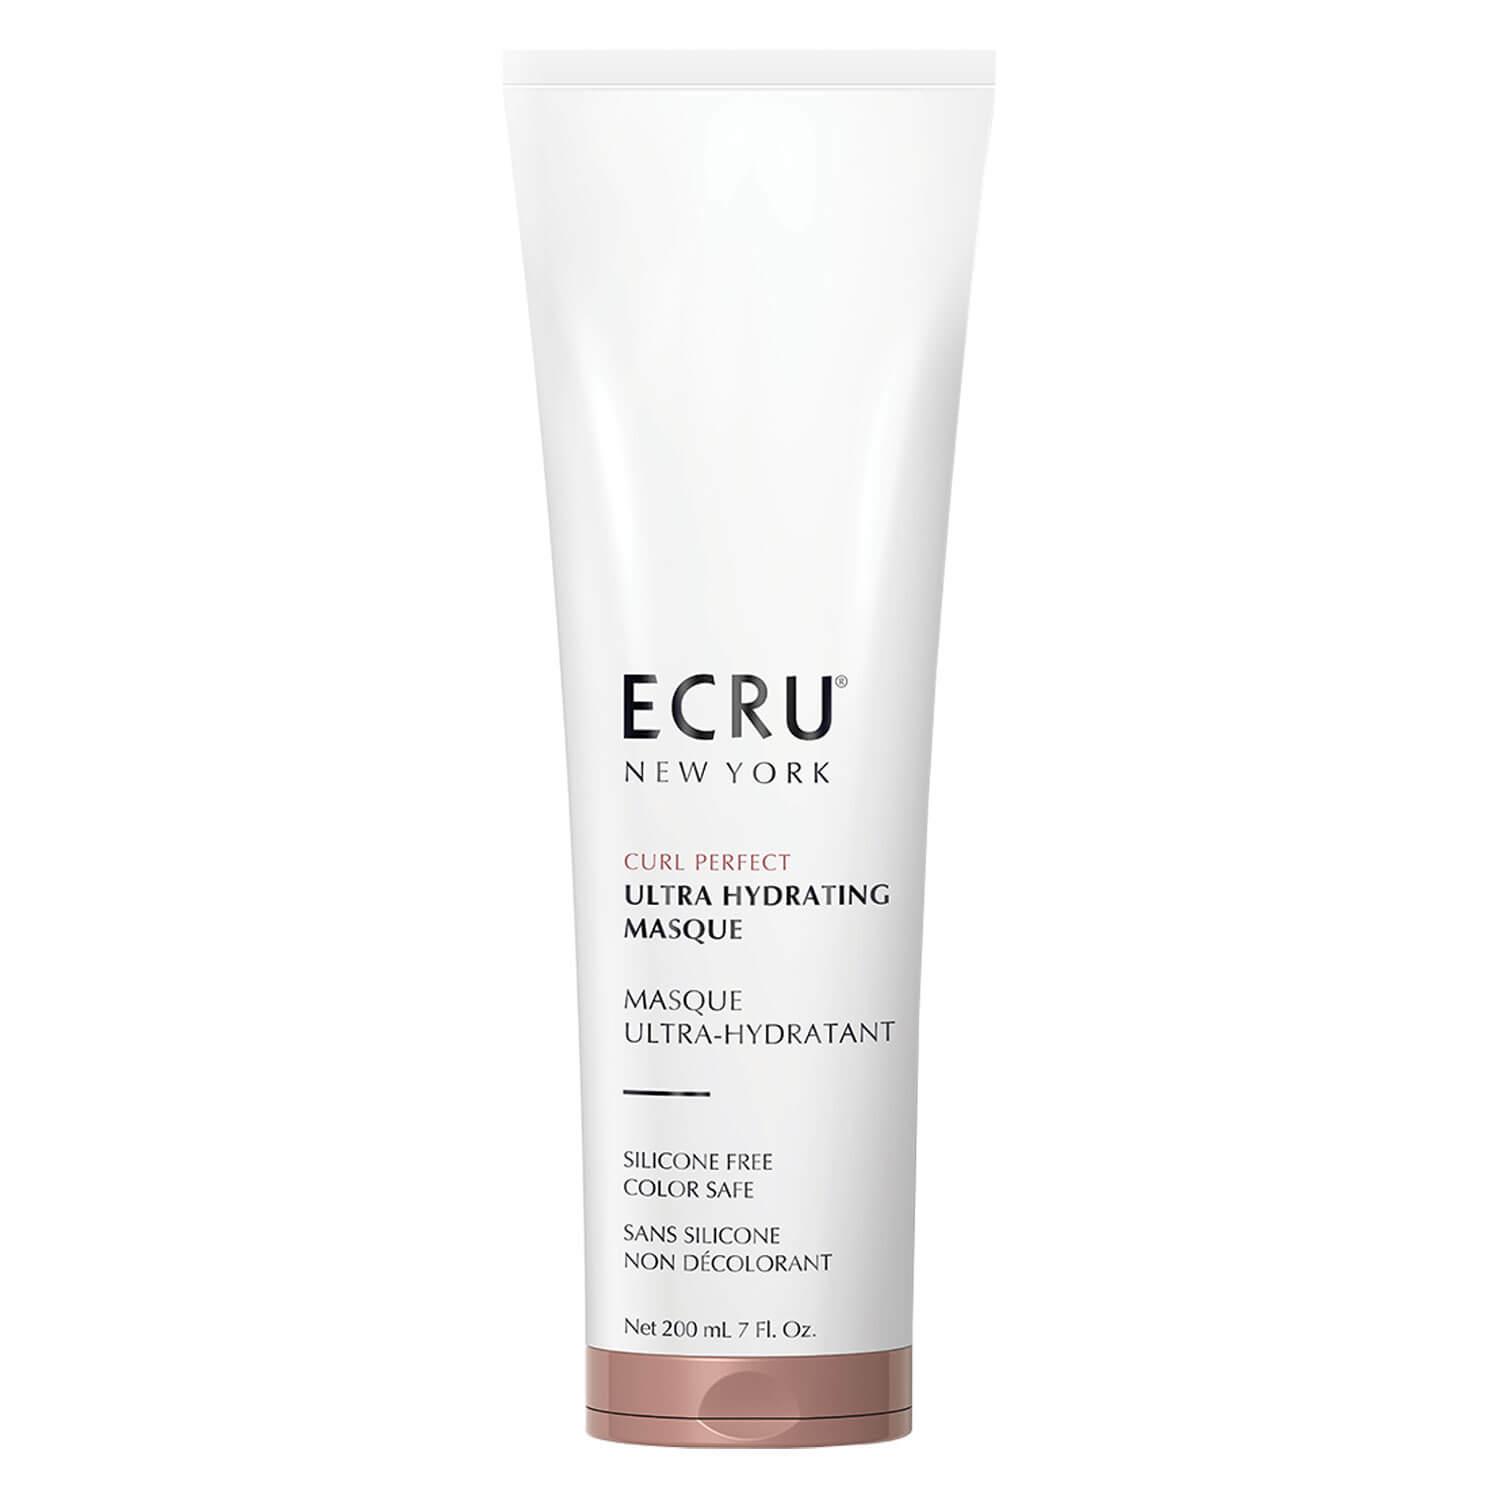 Ecru Curl Perfect - Ultra Hydrating Masque Tube